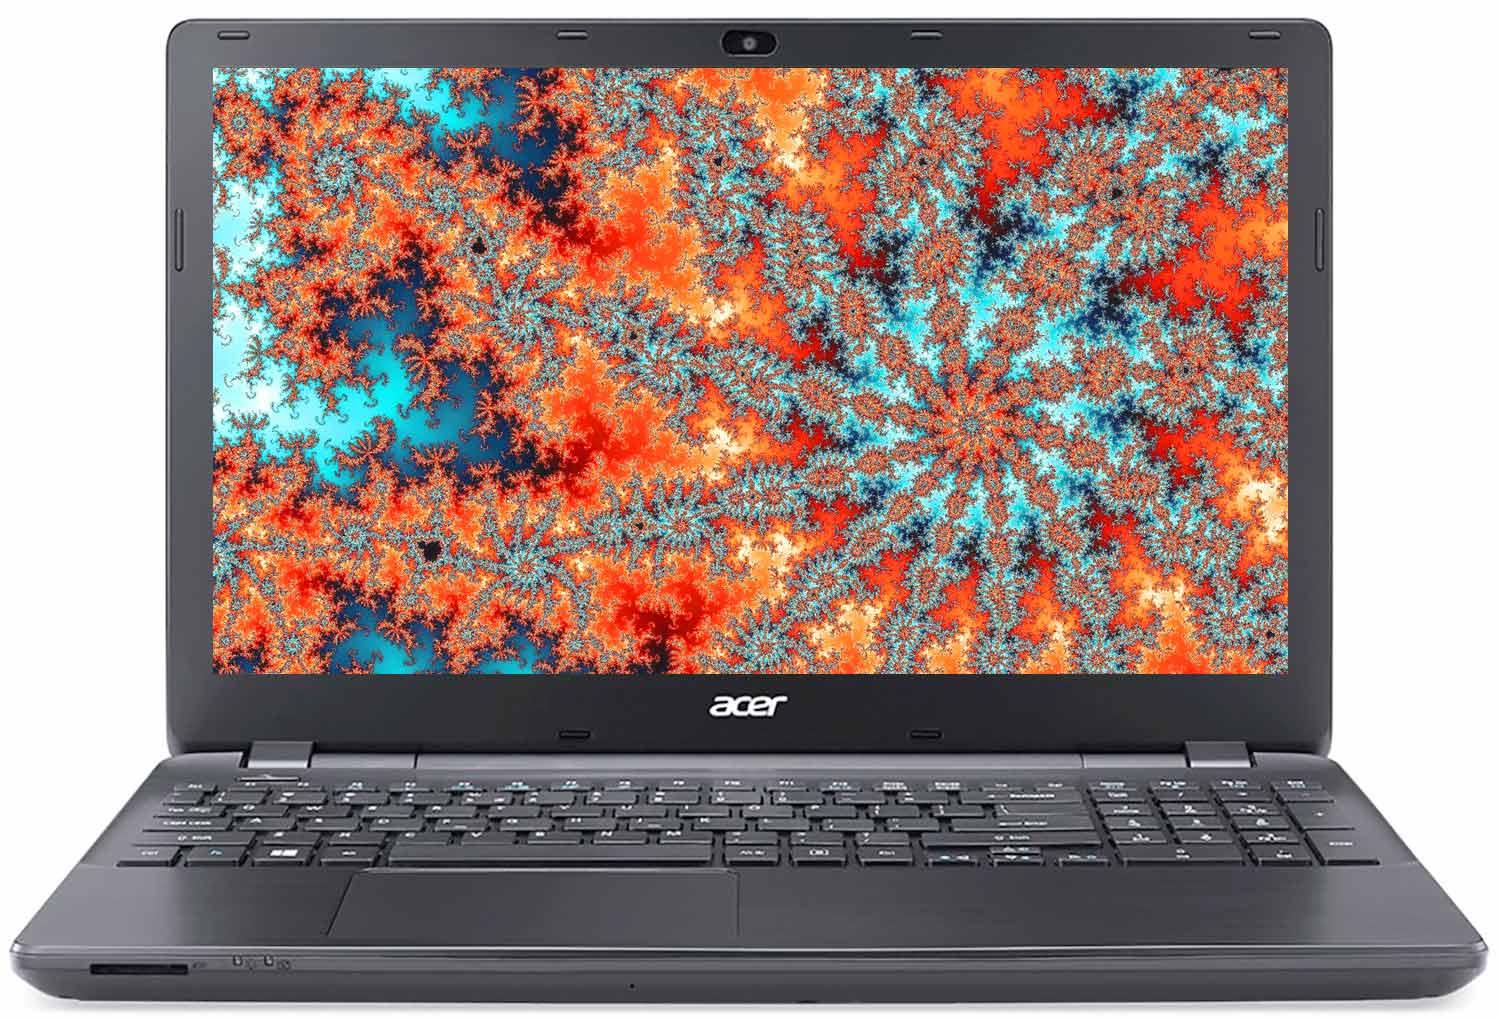   Acer Extensa EX2508-C5W6 (NX.EF1ER.018)  1